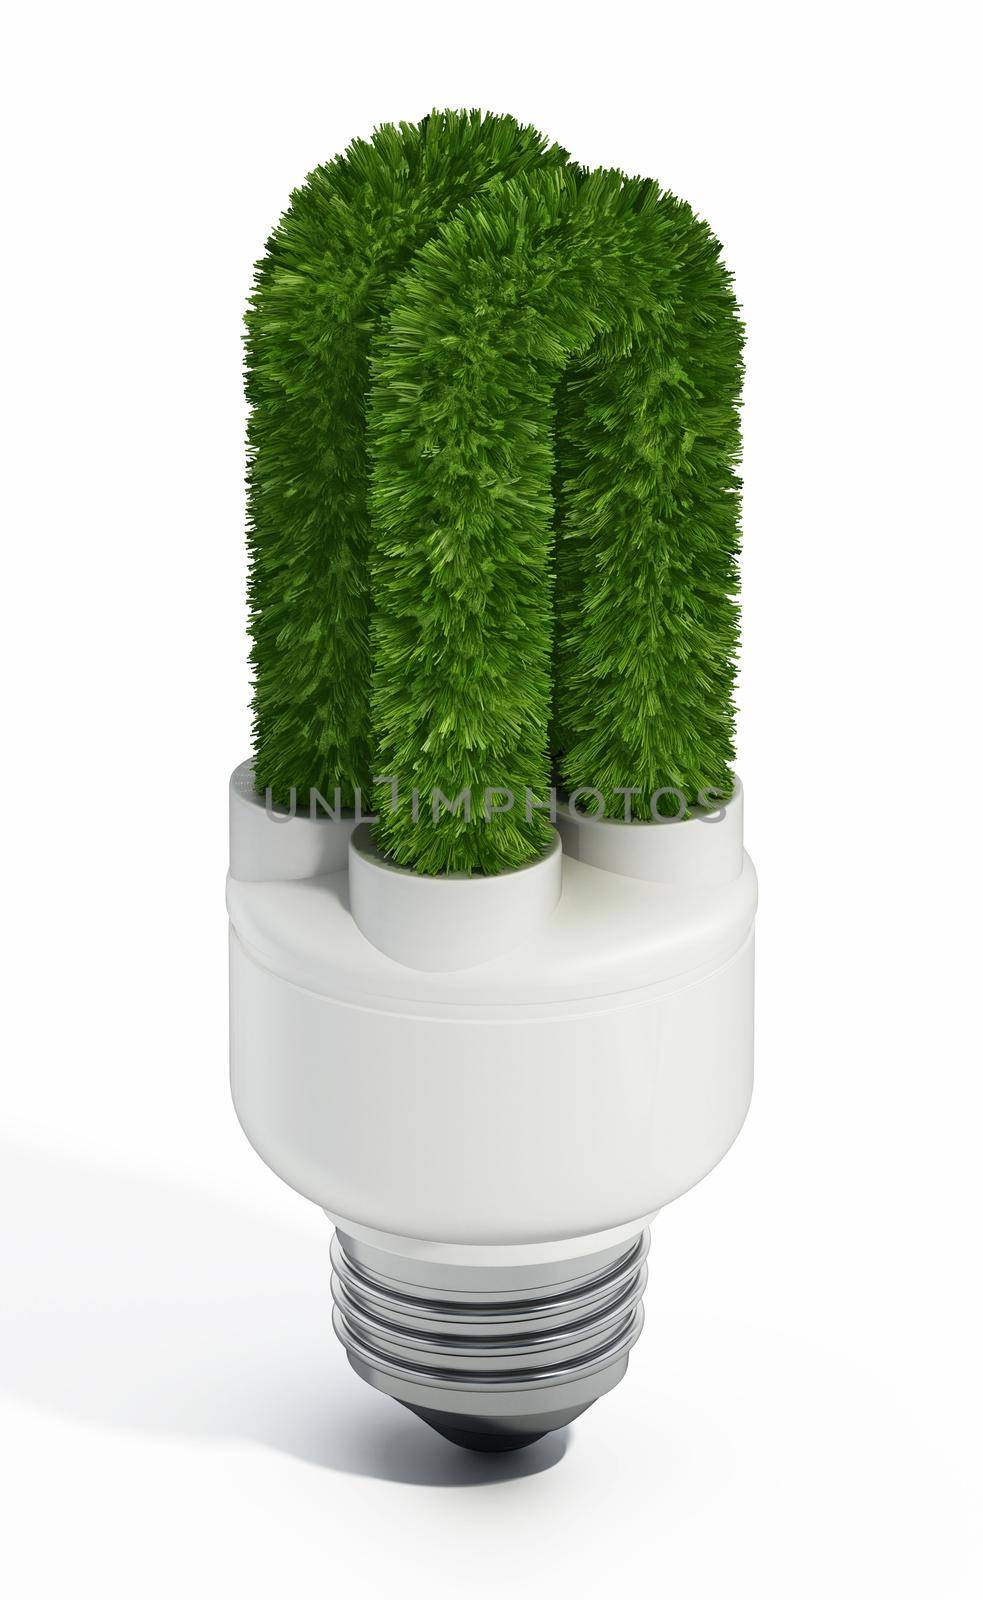 Green fluorescent light bulb isolated on white background. 3D illustration.